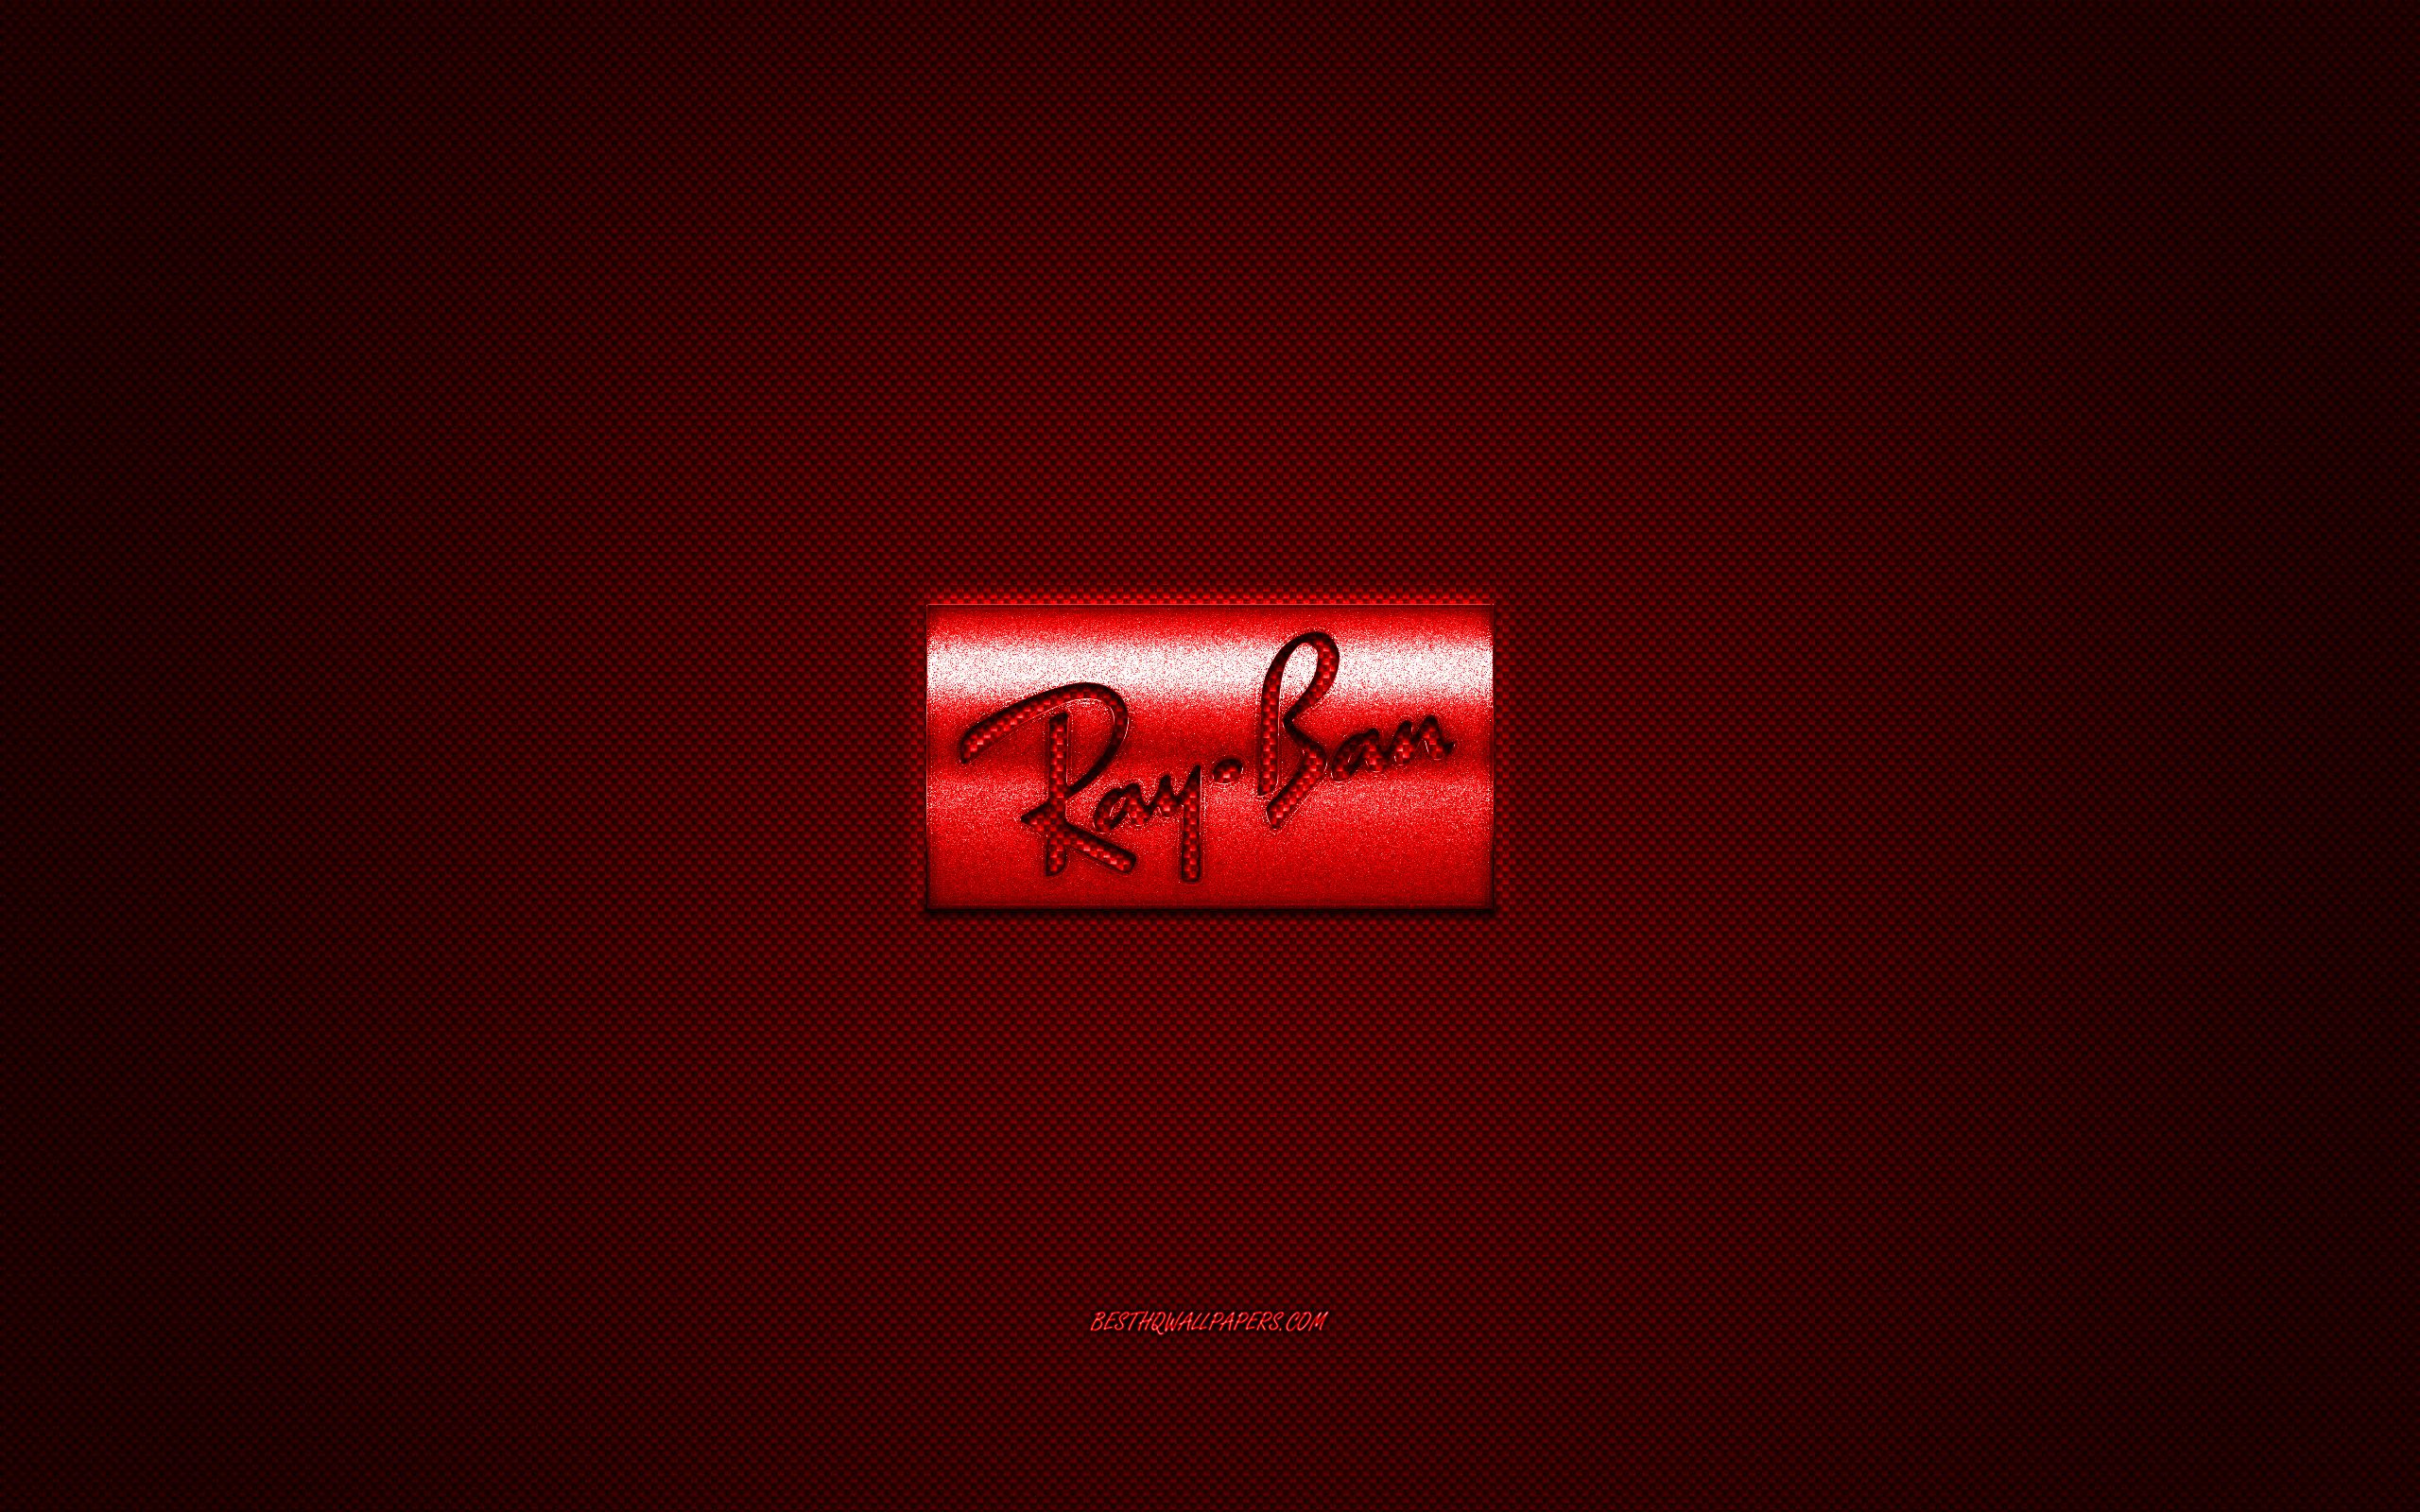 Бан на обои. Рей Бен логотип. RB логотип. Обои banned. Ray ban лого.